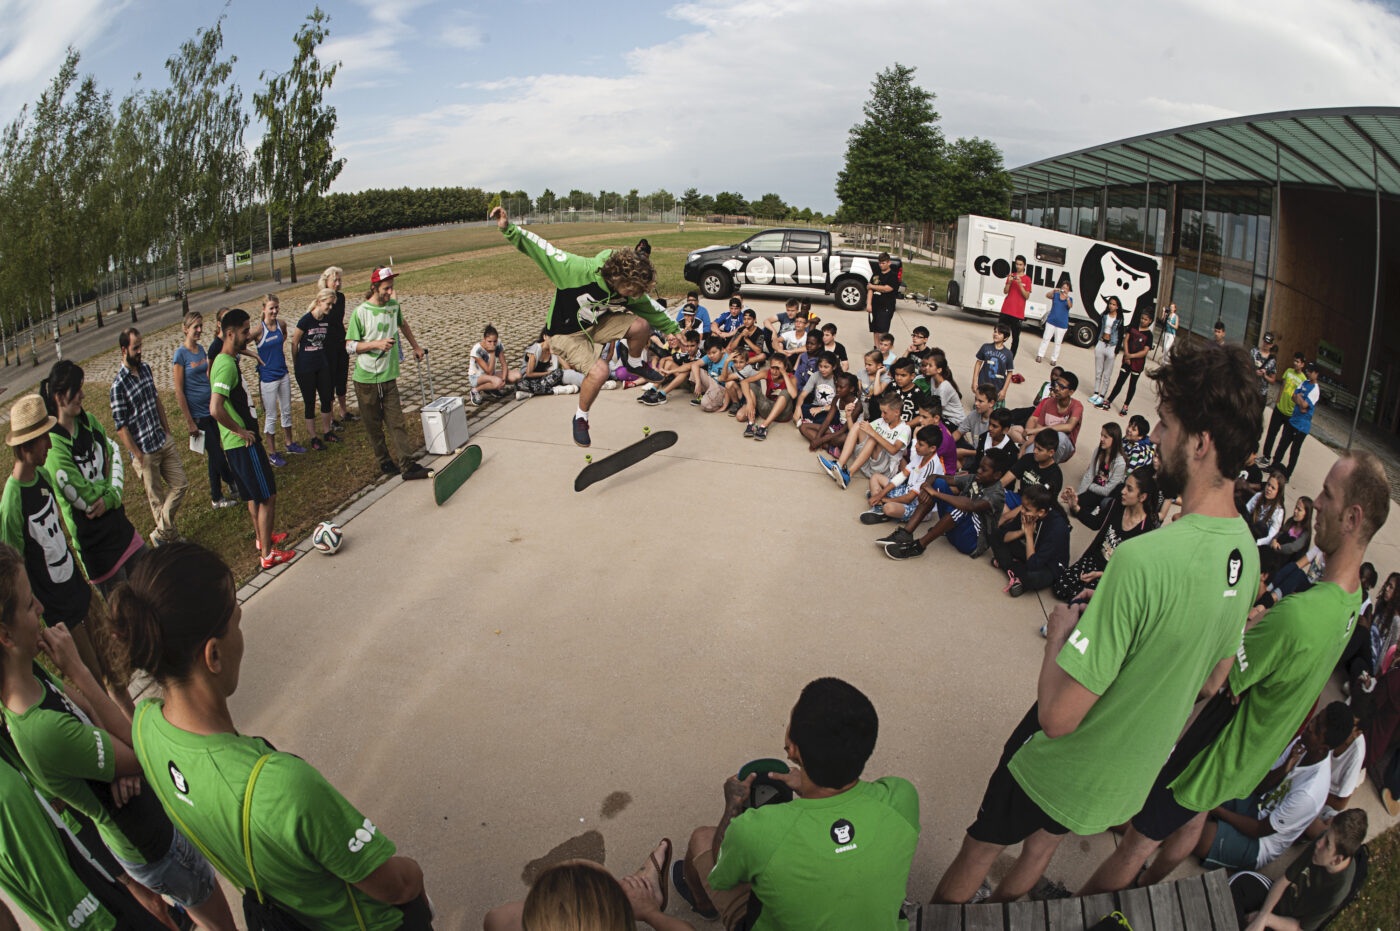 Ein GORILLA Botschafter zeigt in einem Kreis von Jugendlichen einen Skateboardtrick.